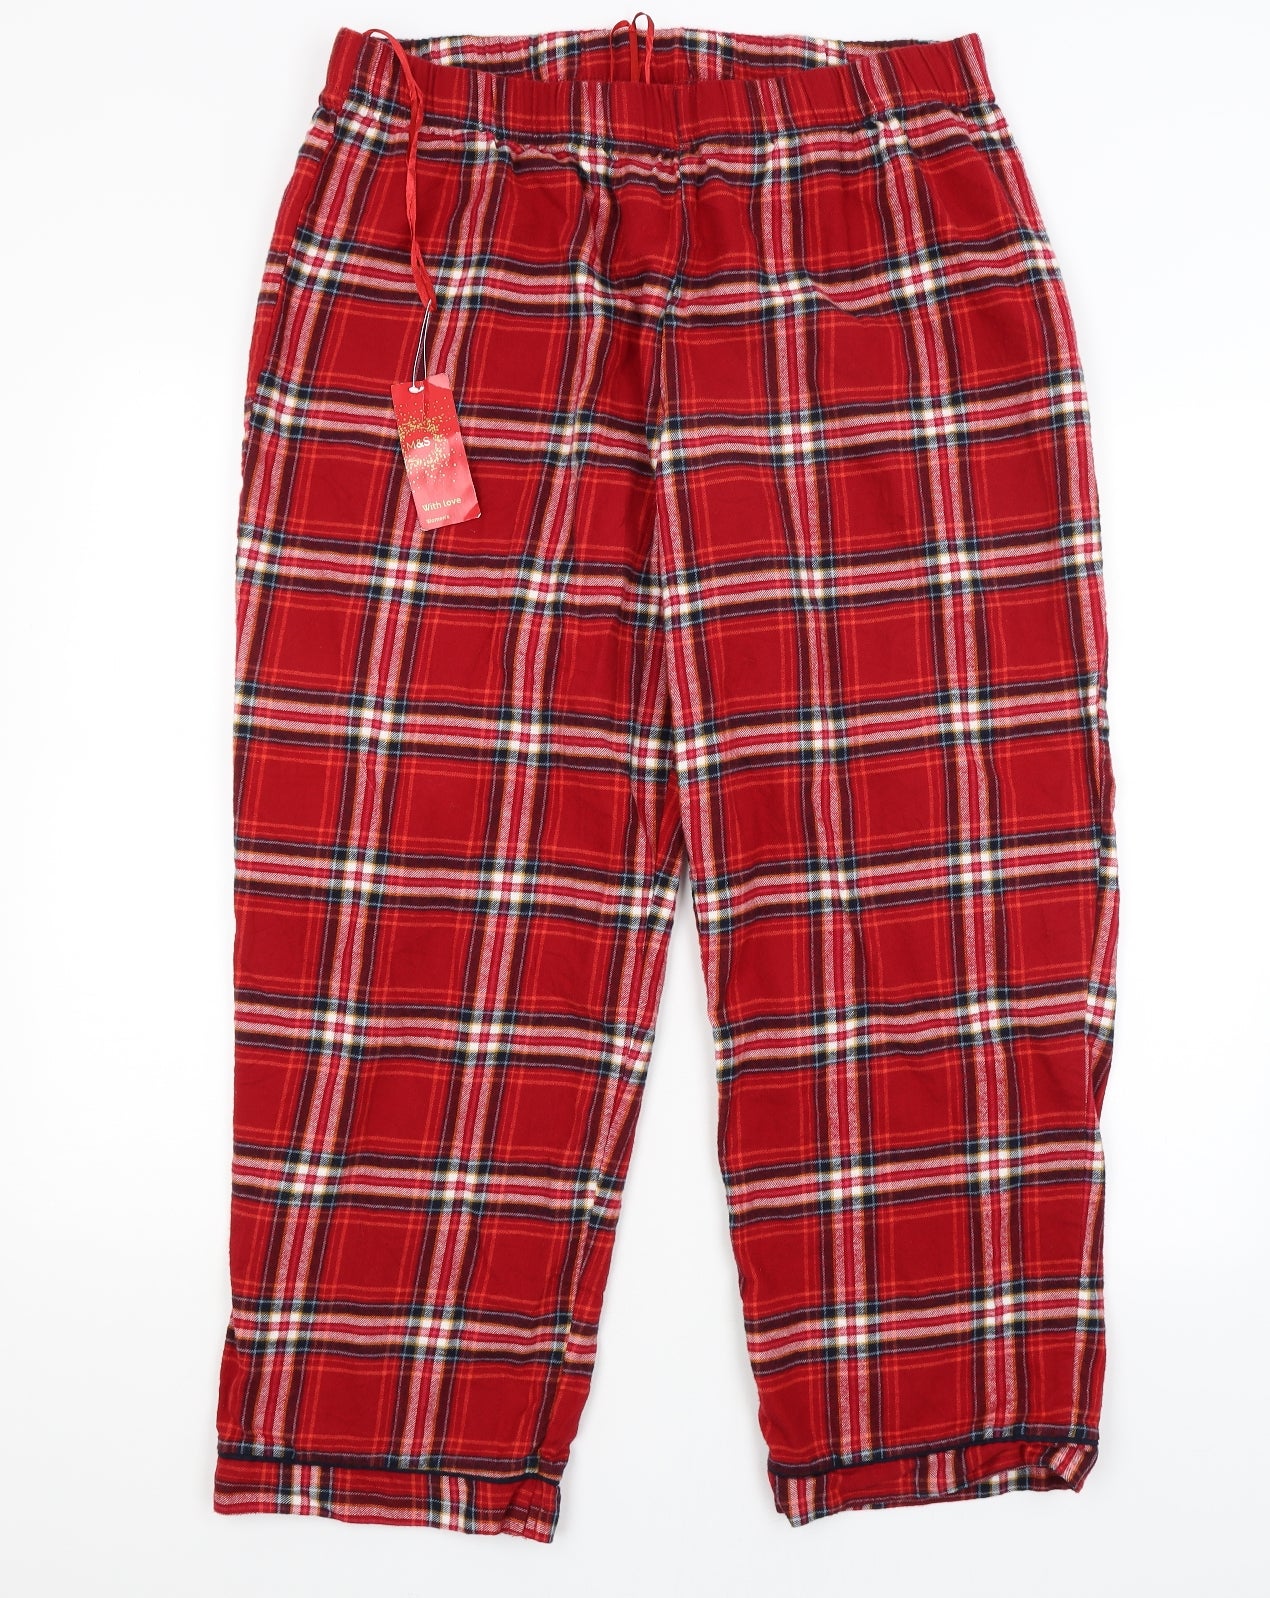 M&S Womens Red Plaid Capri Pyjama Pants Size 20 – Preworn Ltd